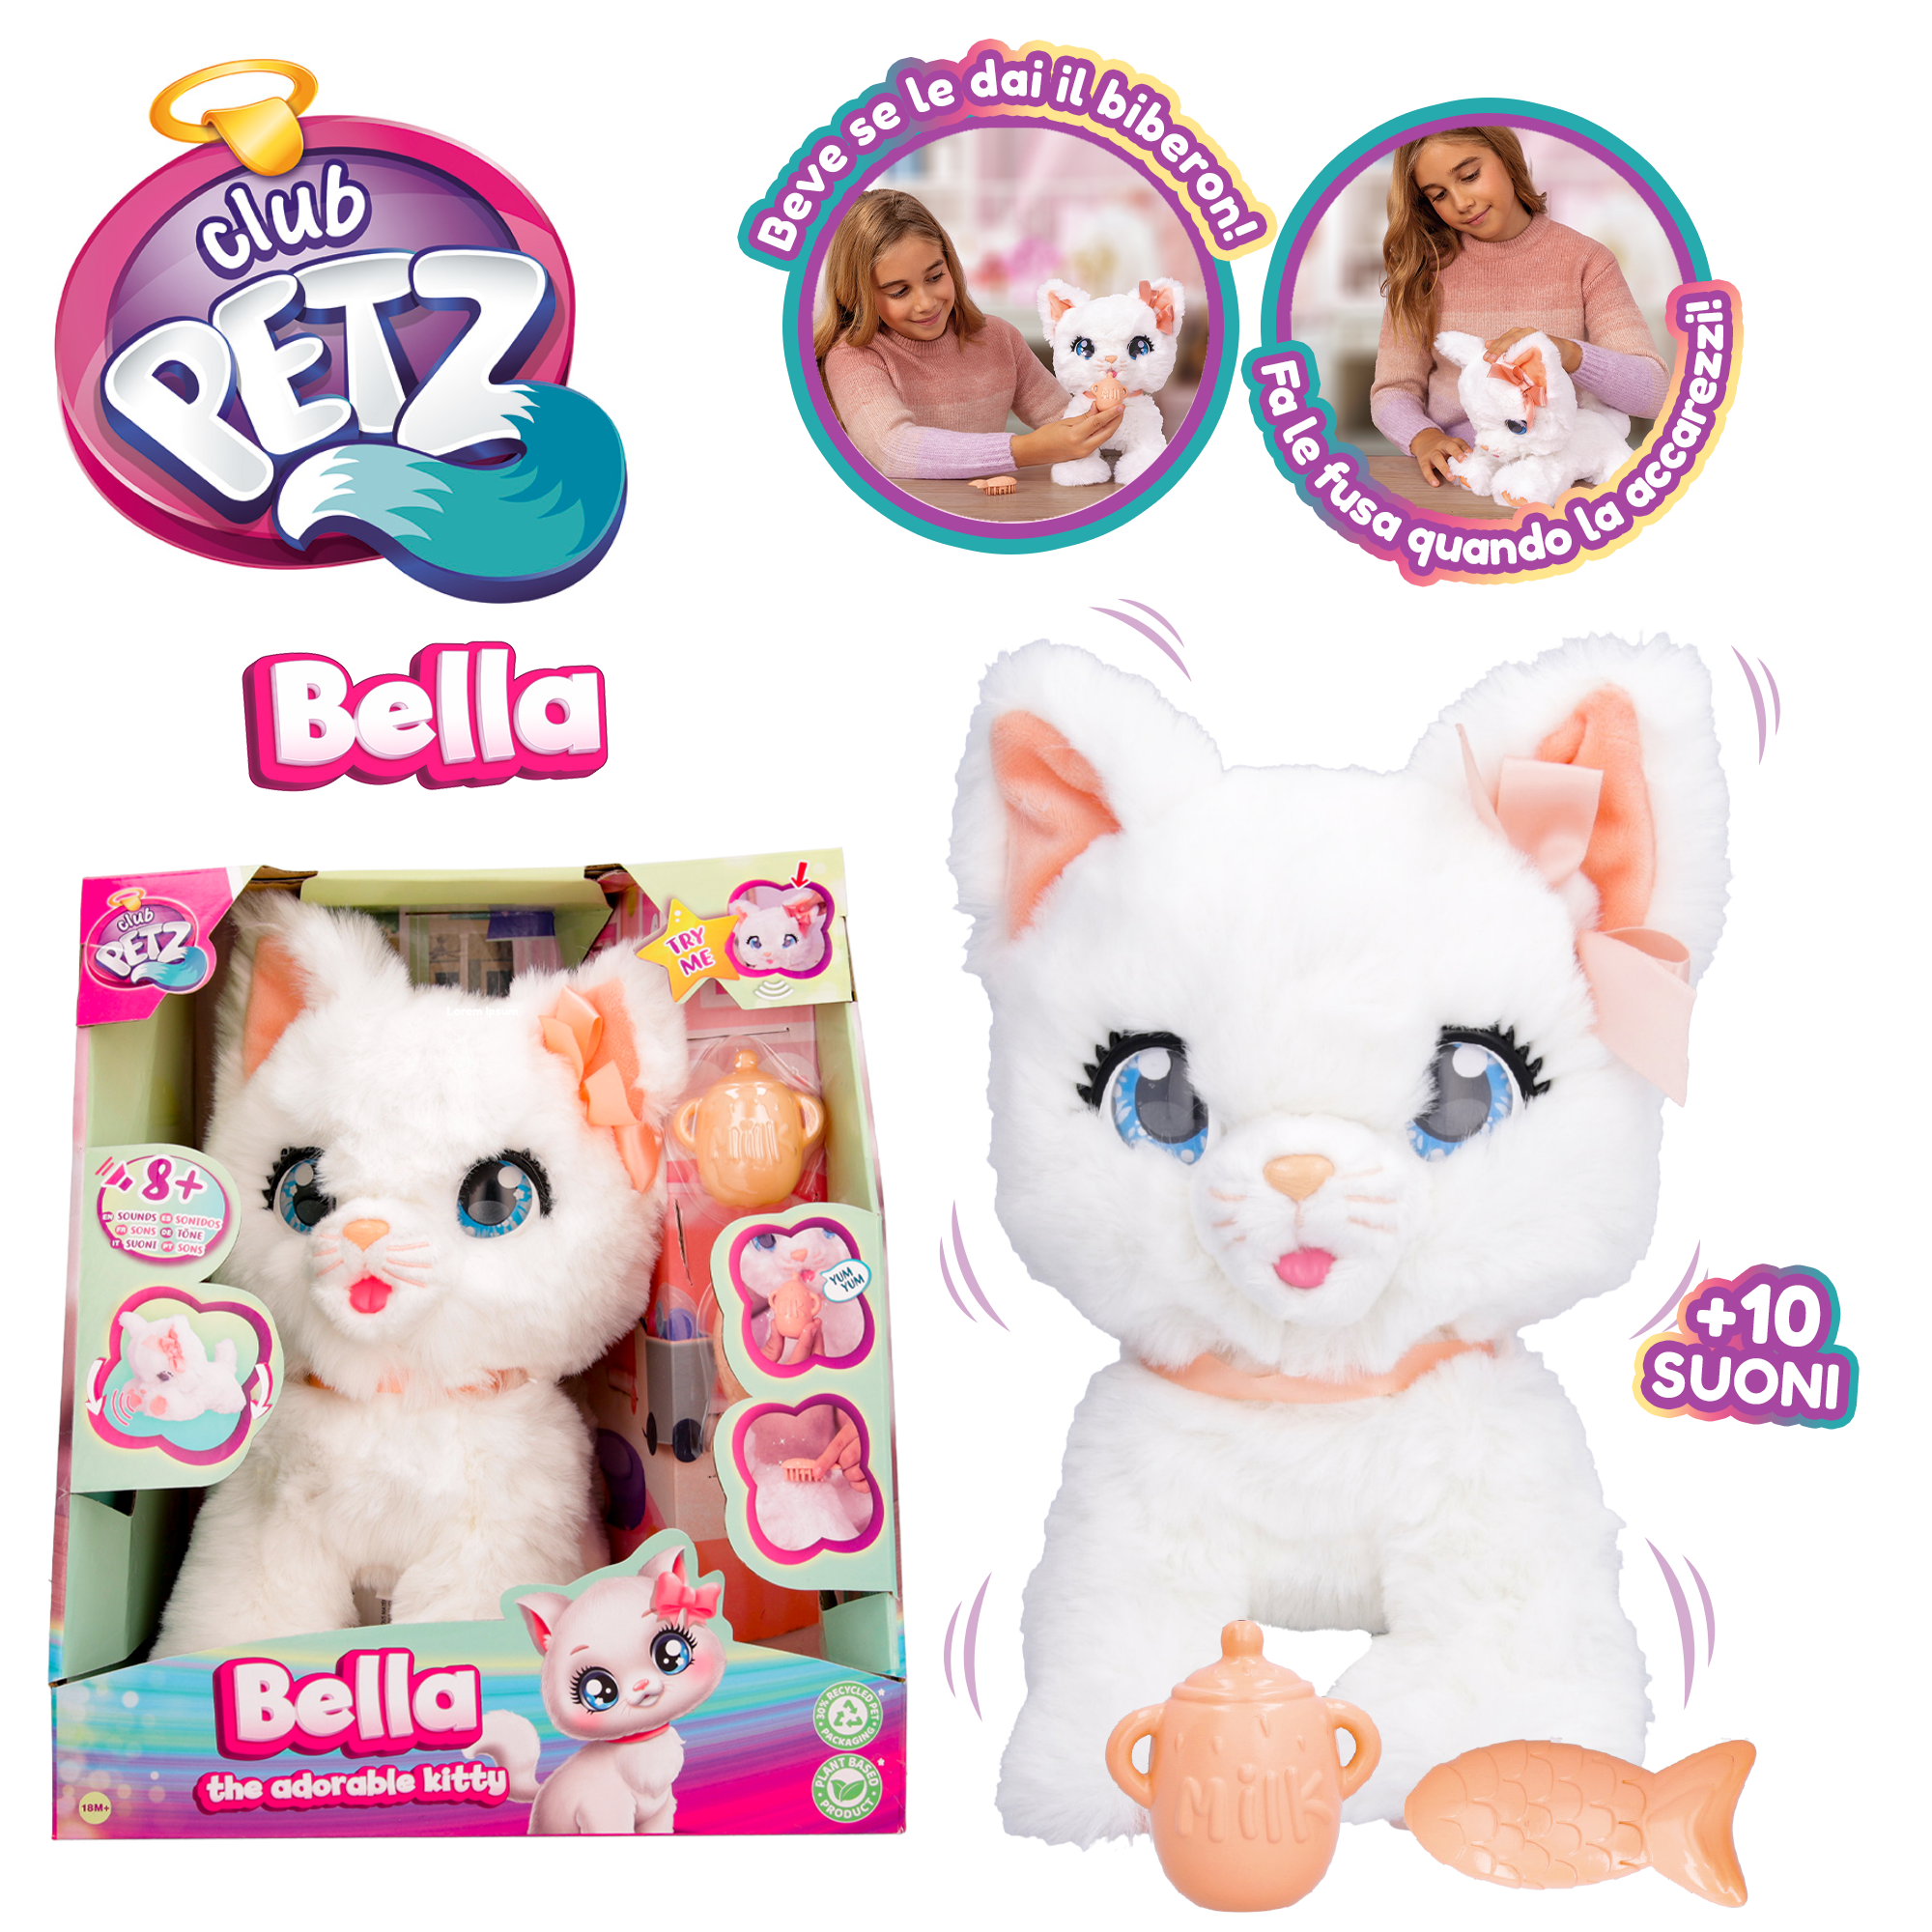 Club petz bella, the adorable kitty - la gattina più coccolosa che ci sia! - Club Petz IMC